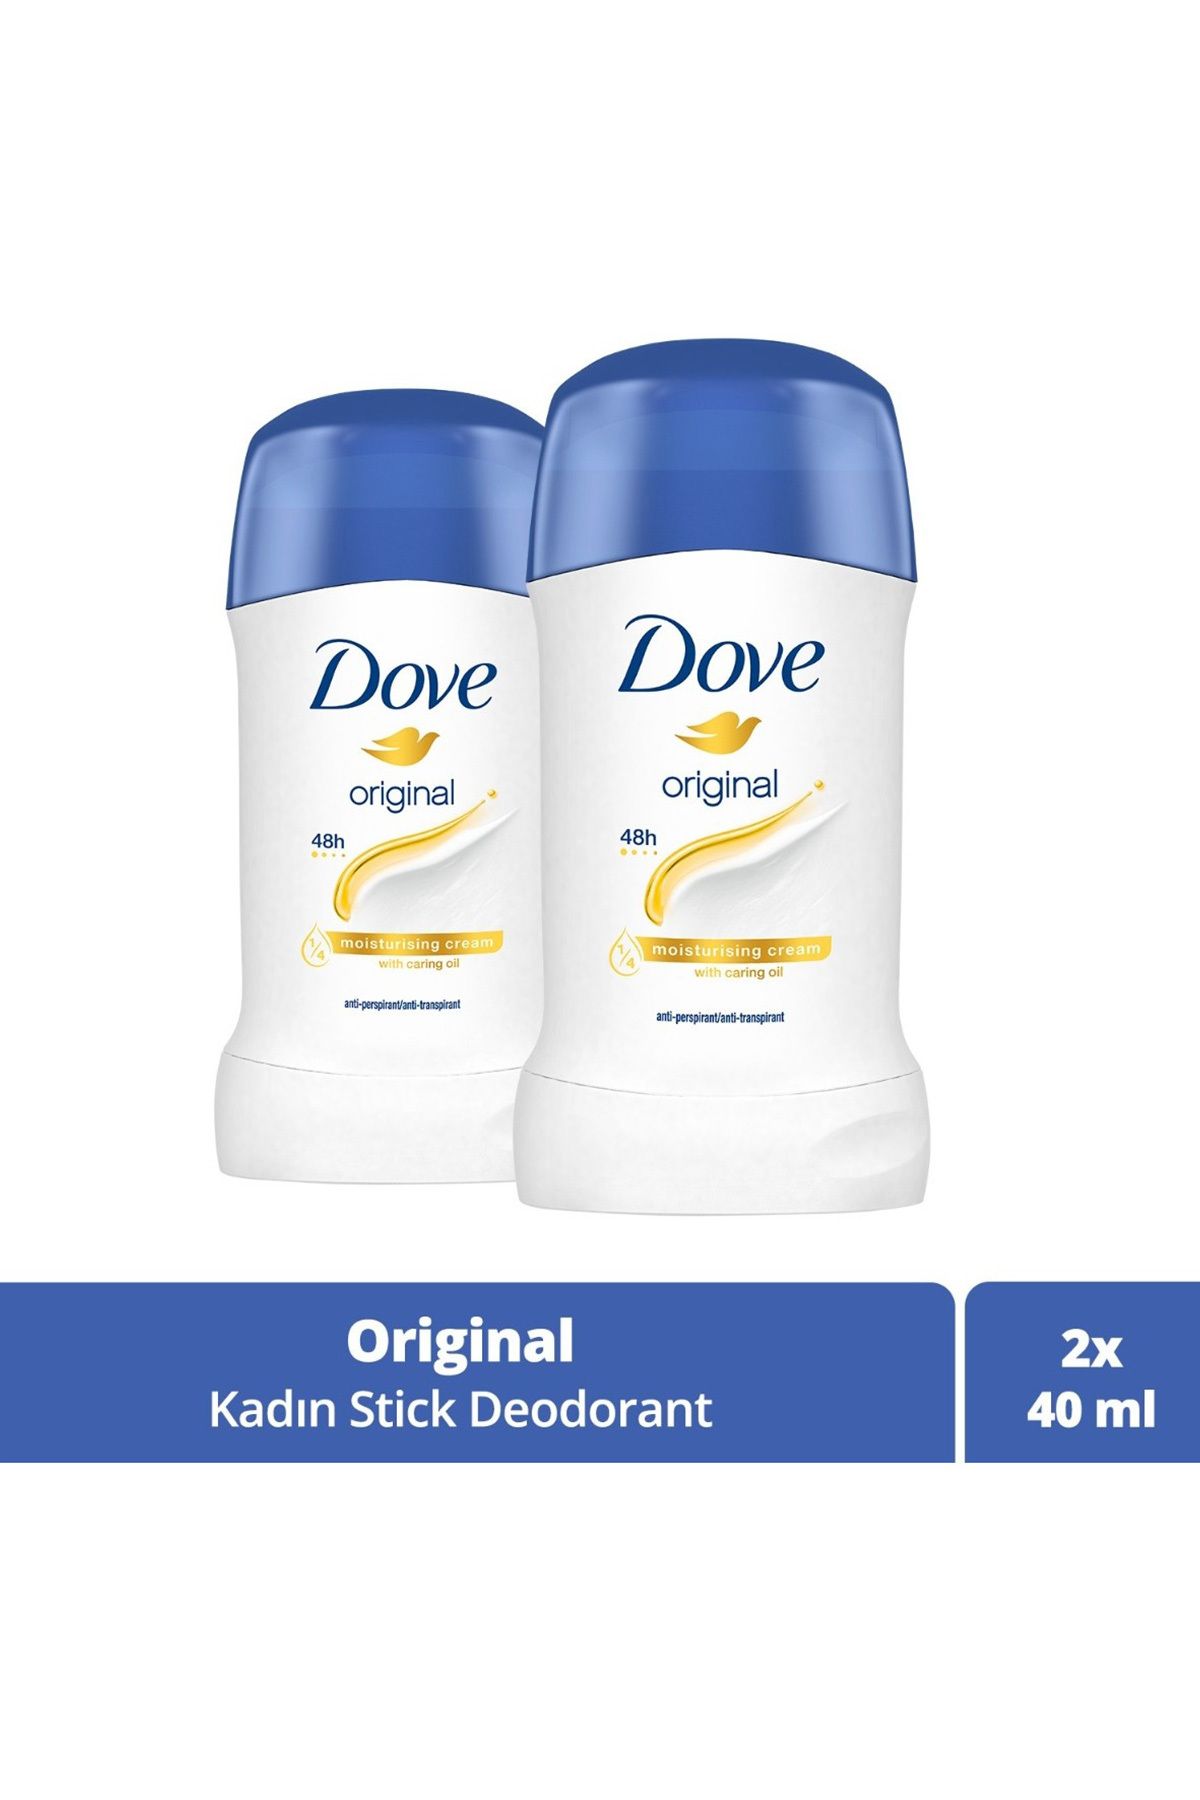 Dove Kadın Stick Deodorant Original 1/4 Nemlendirici Krem Etkili 40ml x2 Adet